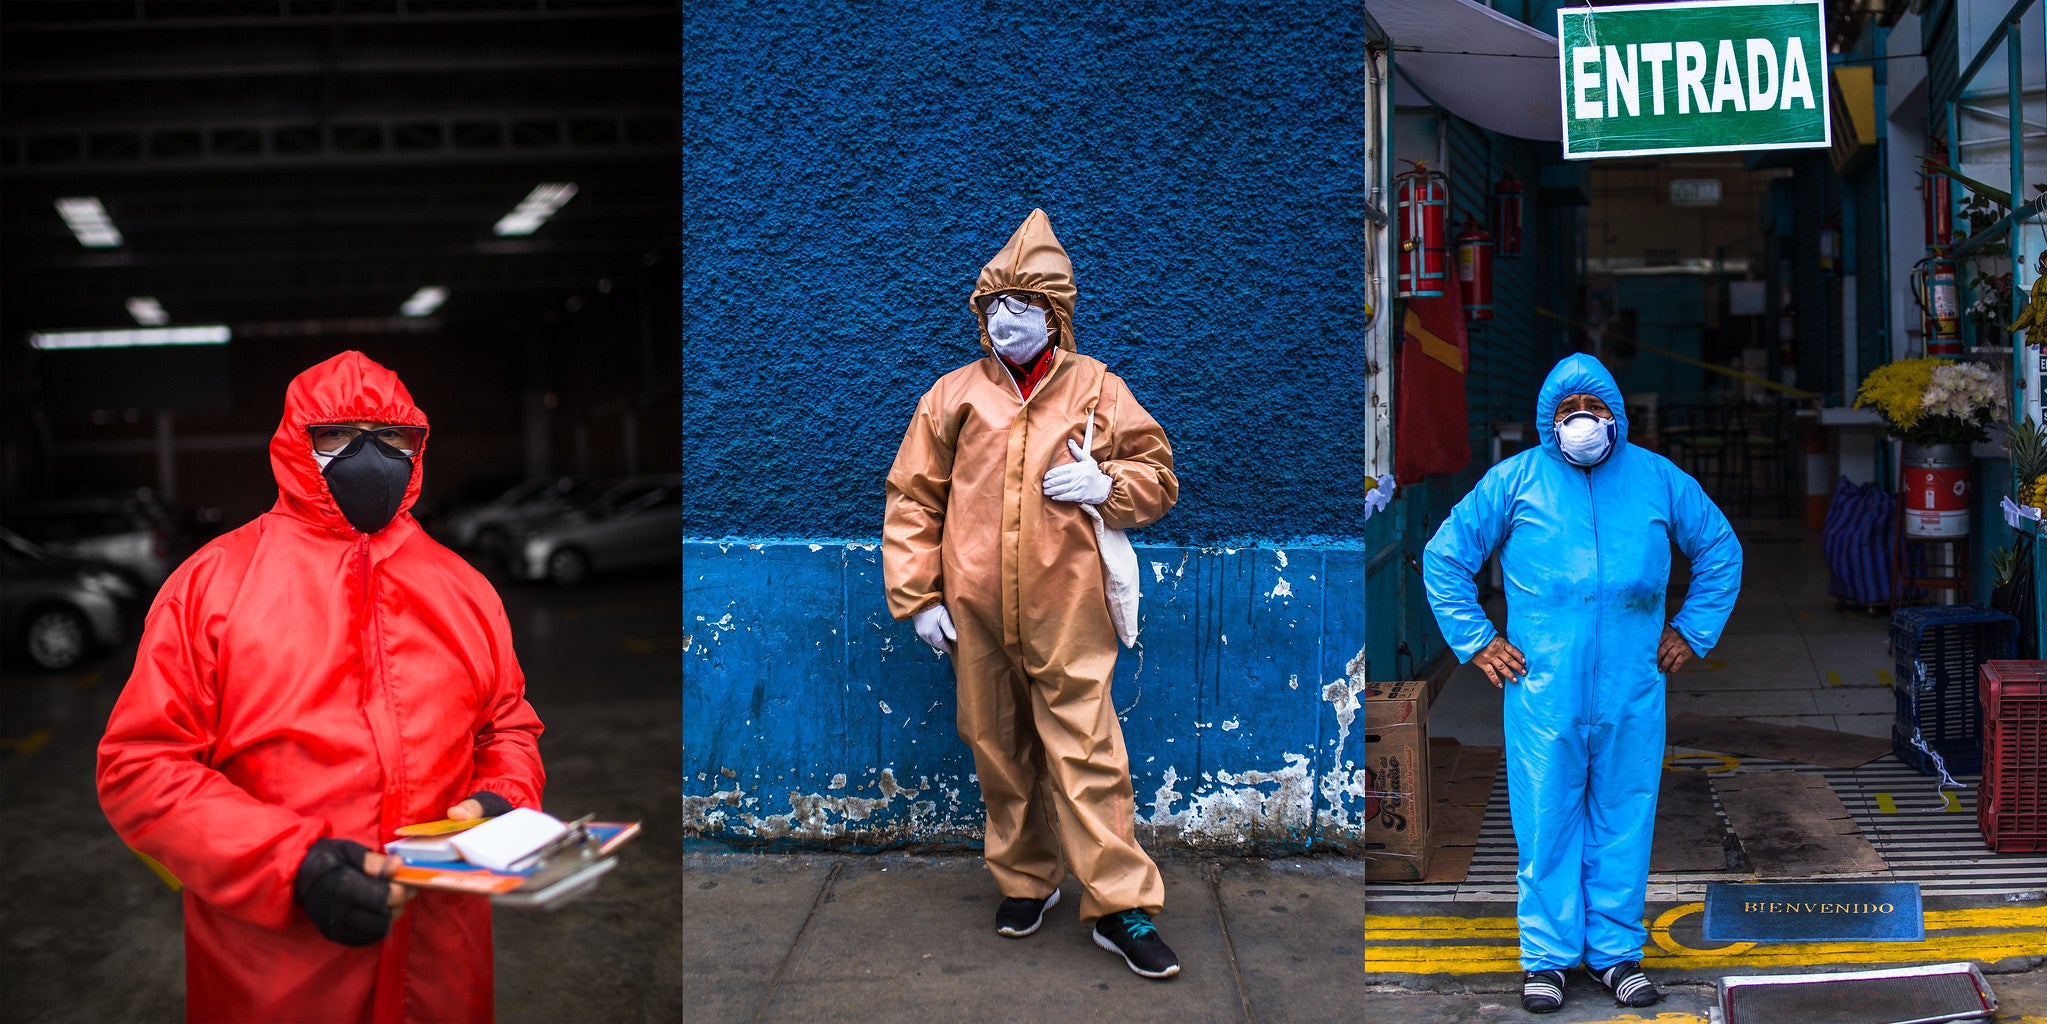 2020. Composición de imágenes de personas en trajes de protección en Lima, Perú, ciudad impactada fuertemente por la COVID19, durante los tiempos de pandemia.